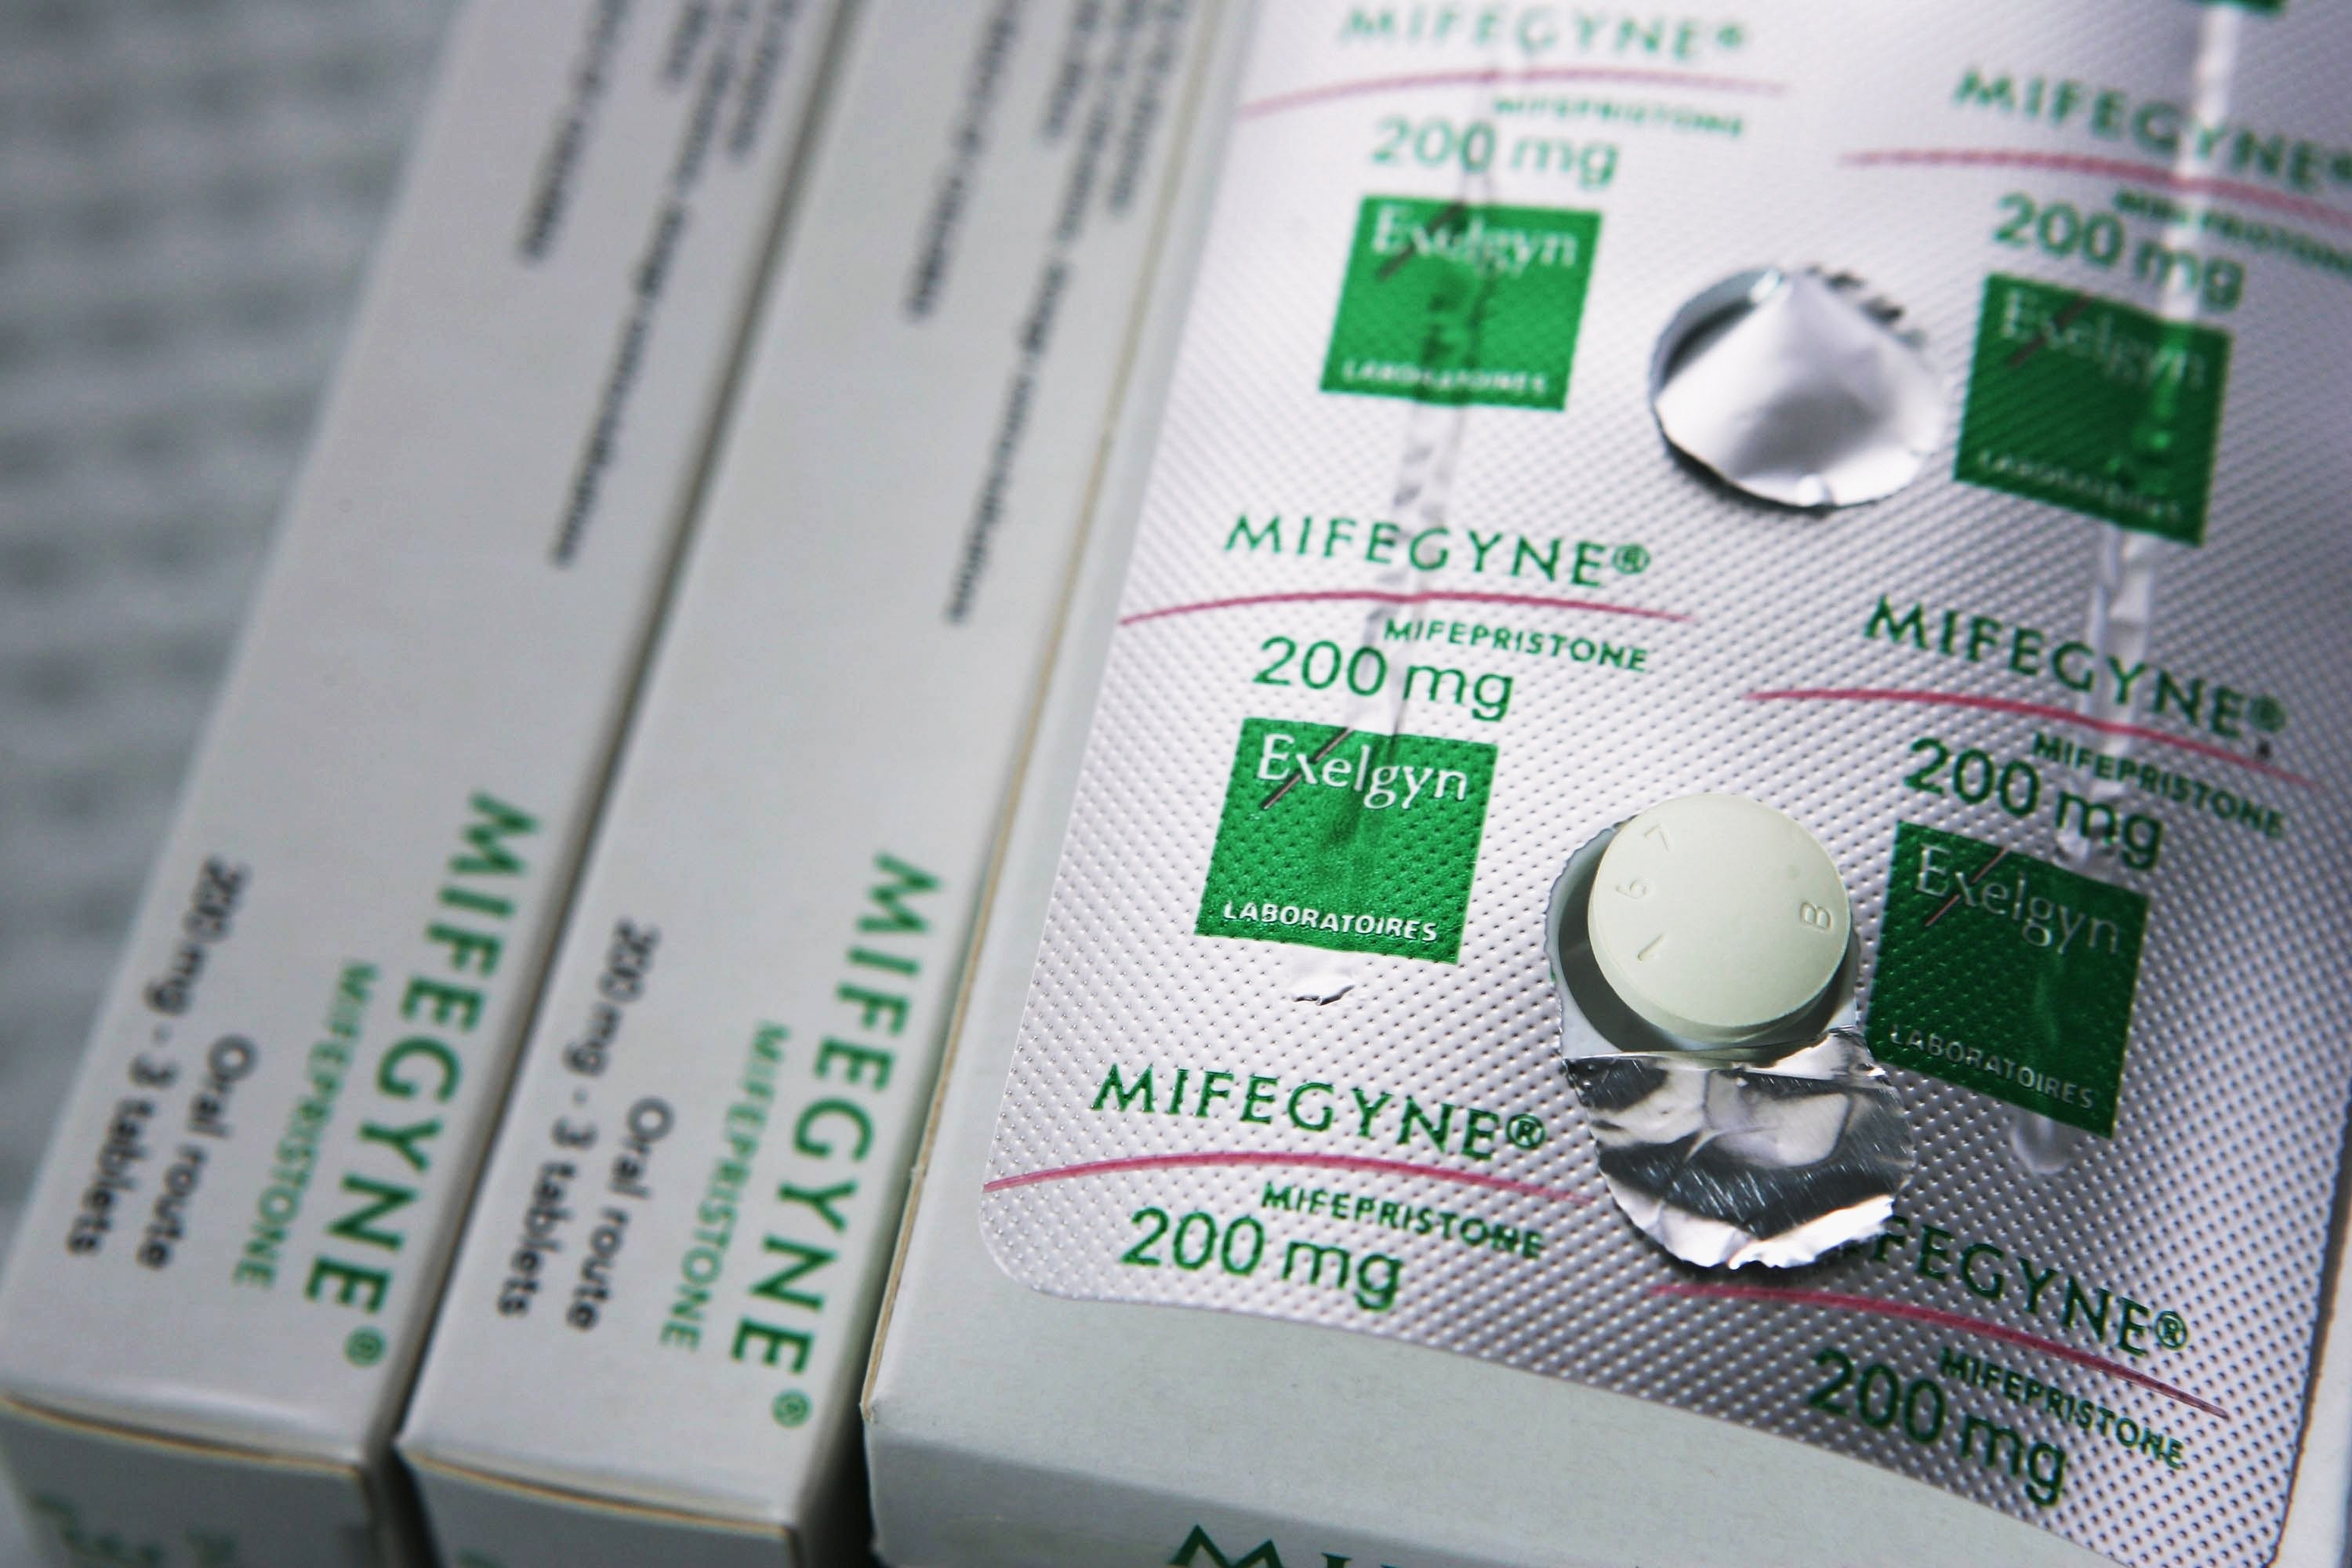 Медикаментозное прерывание первые таблетки. "Mifepristone" (мифепристон). Мифегин медикаментозное прерывание. Мифегин 200 мг. Таблетки от прерывания беременности Мифегин.